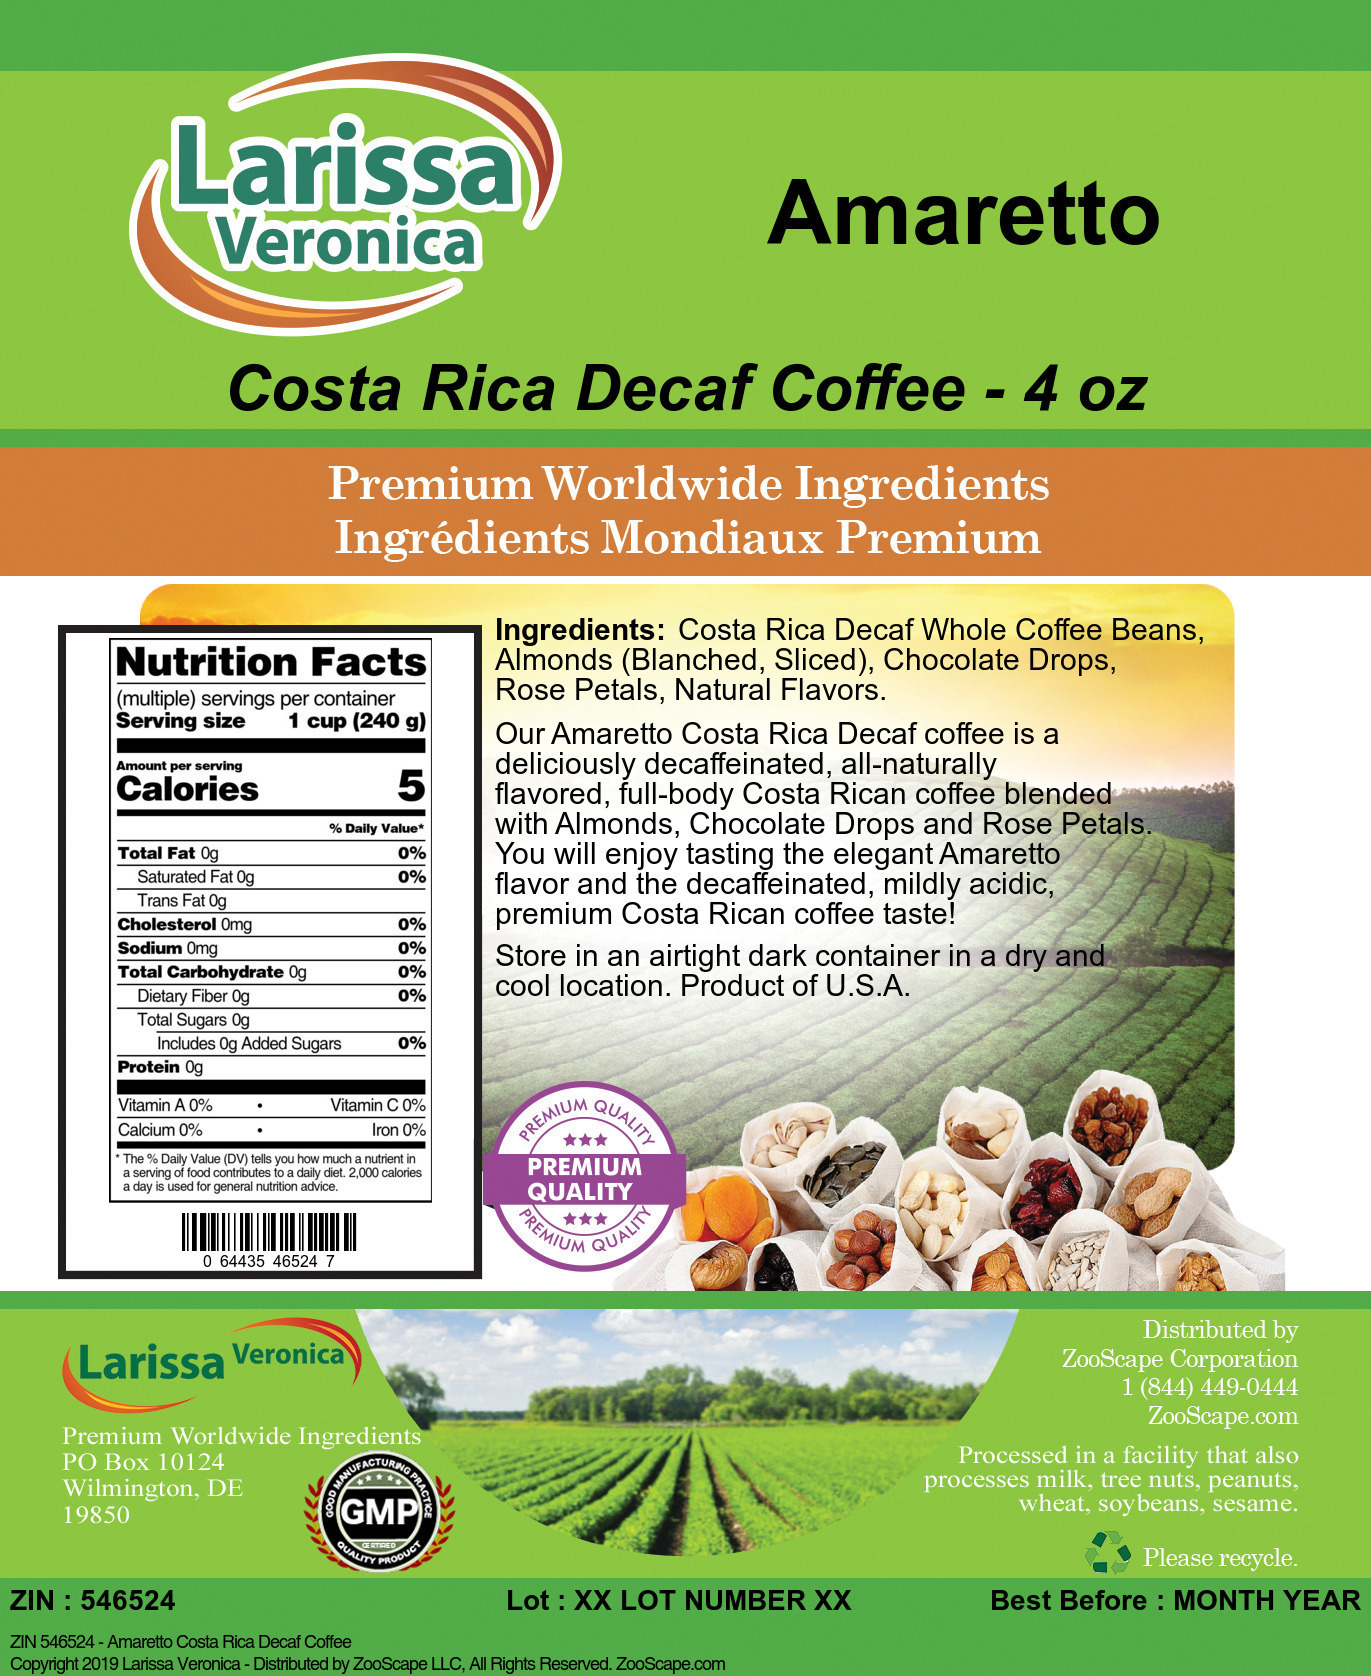 Amaretto Costa Rica Decaf Coffee - Label